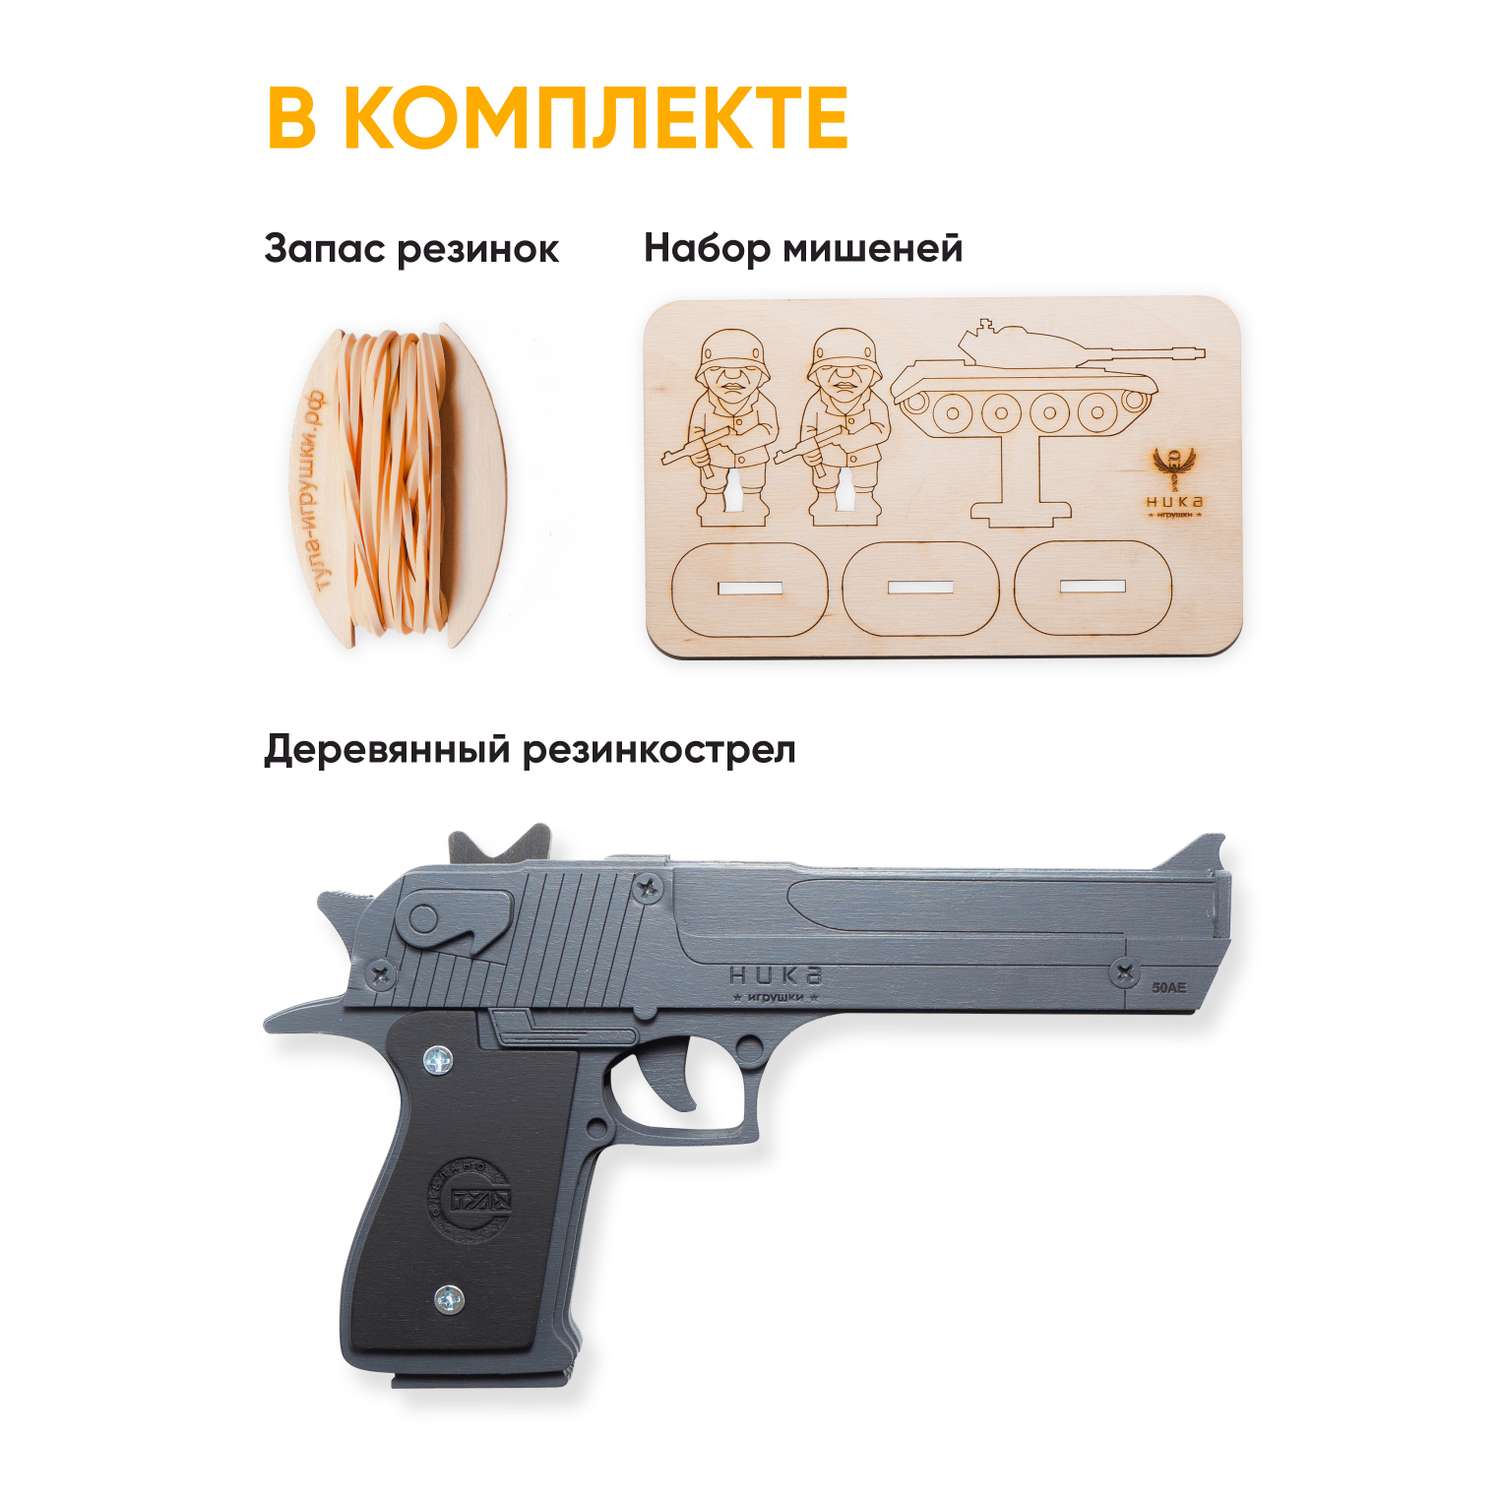 Резинкострел НИКА игрушки Пистолет Desert Eagle Серый в подарочной упаковке - фото 2